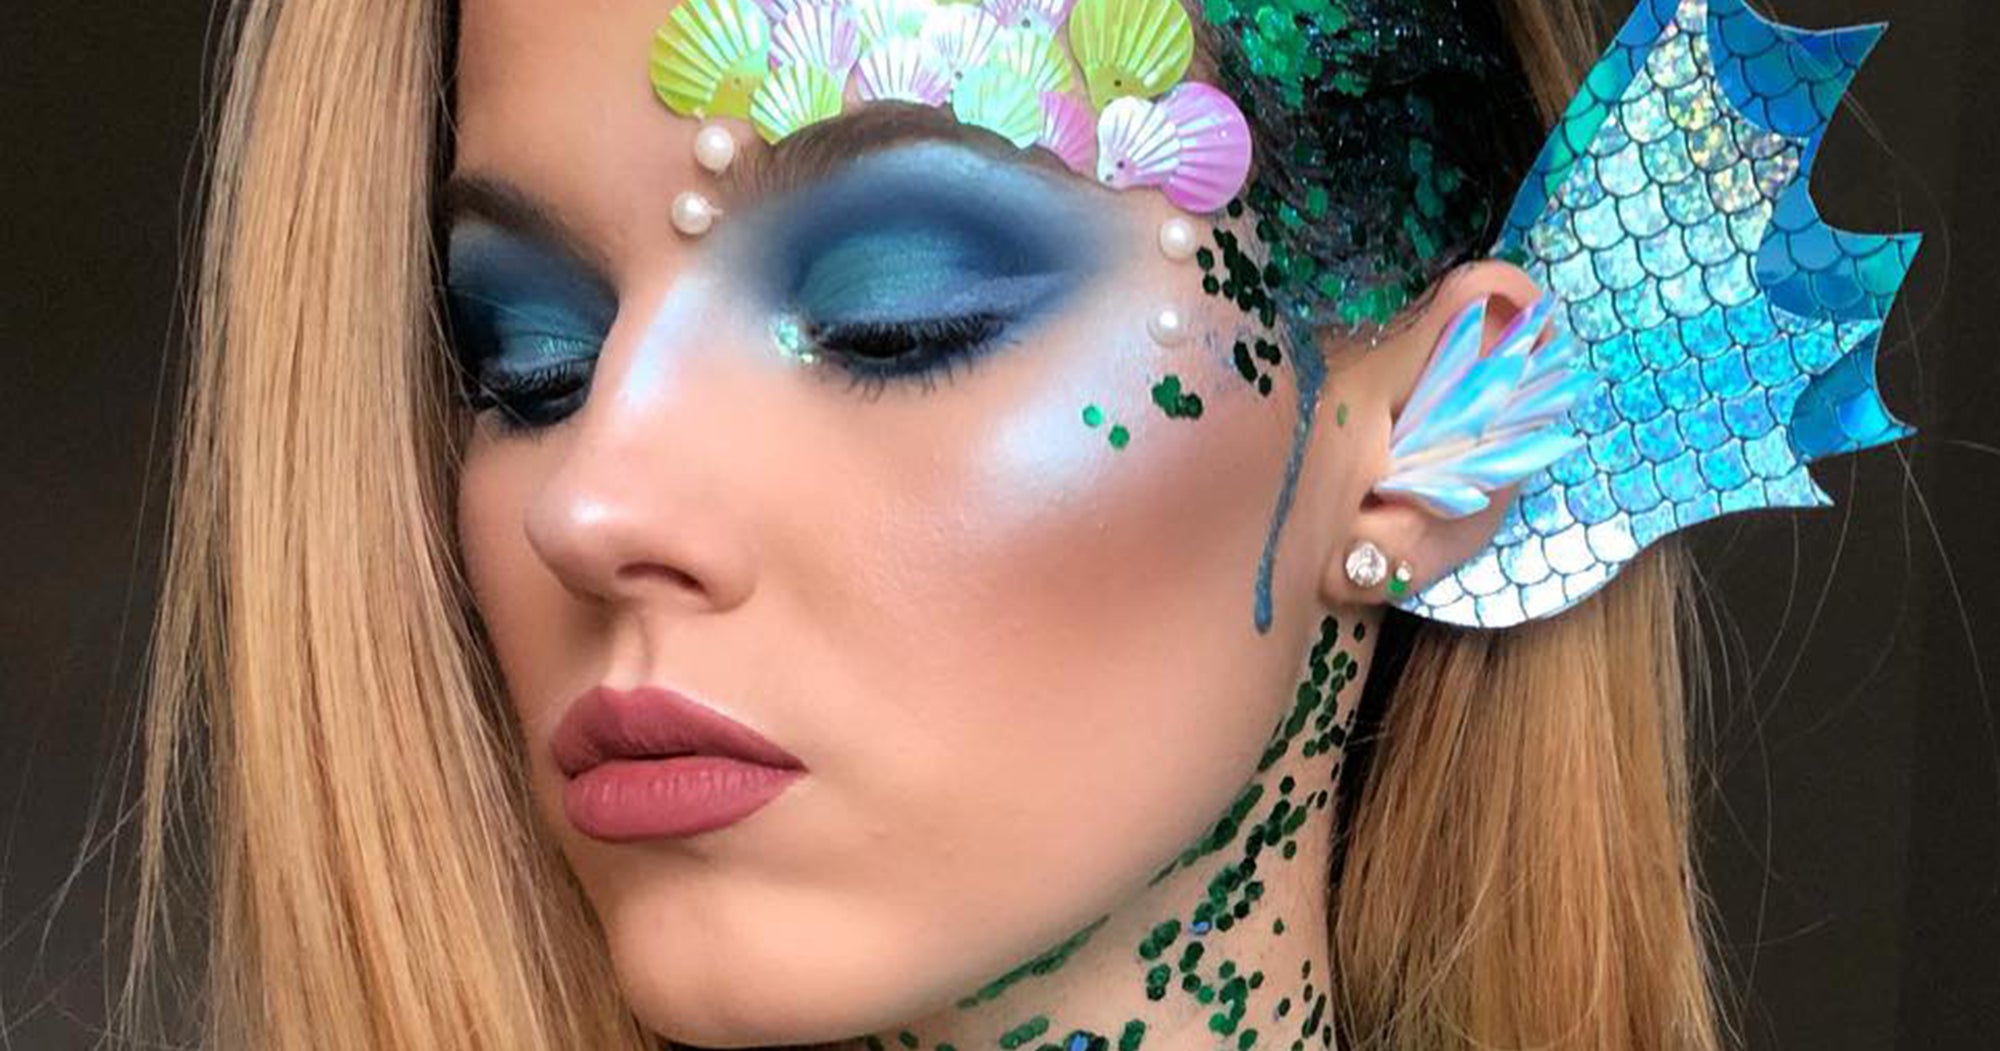 3. "Halloween Makeup: Mermaid with Blue Hair" - wide 4